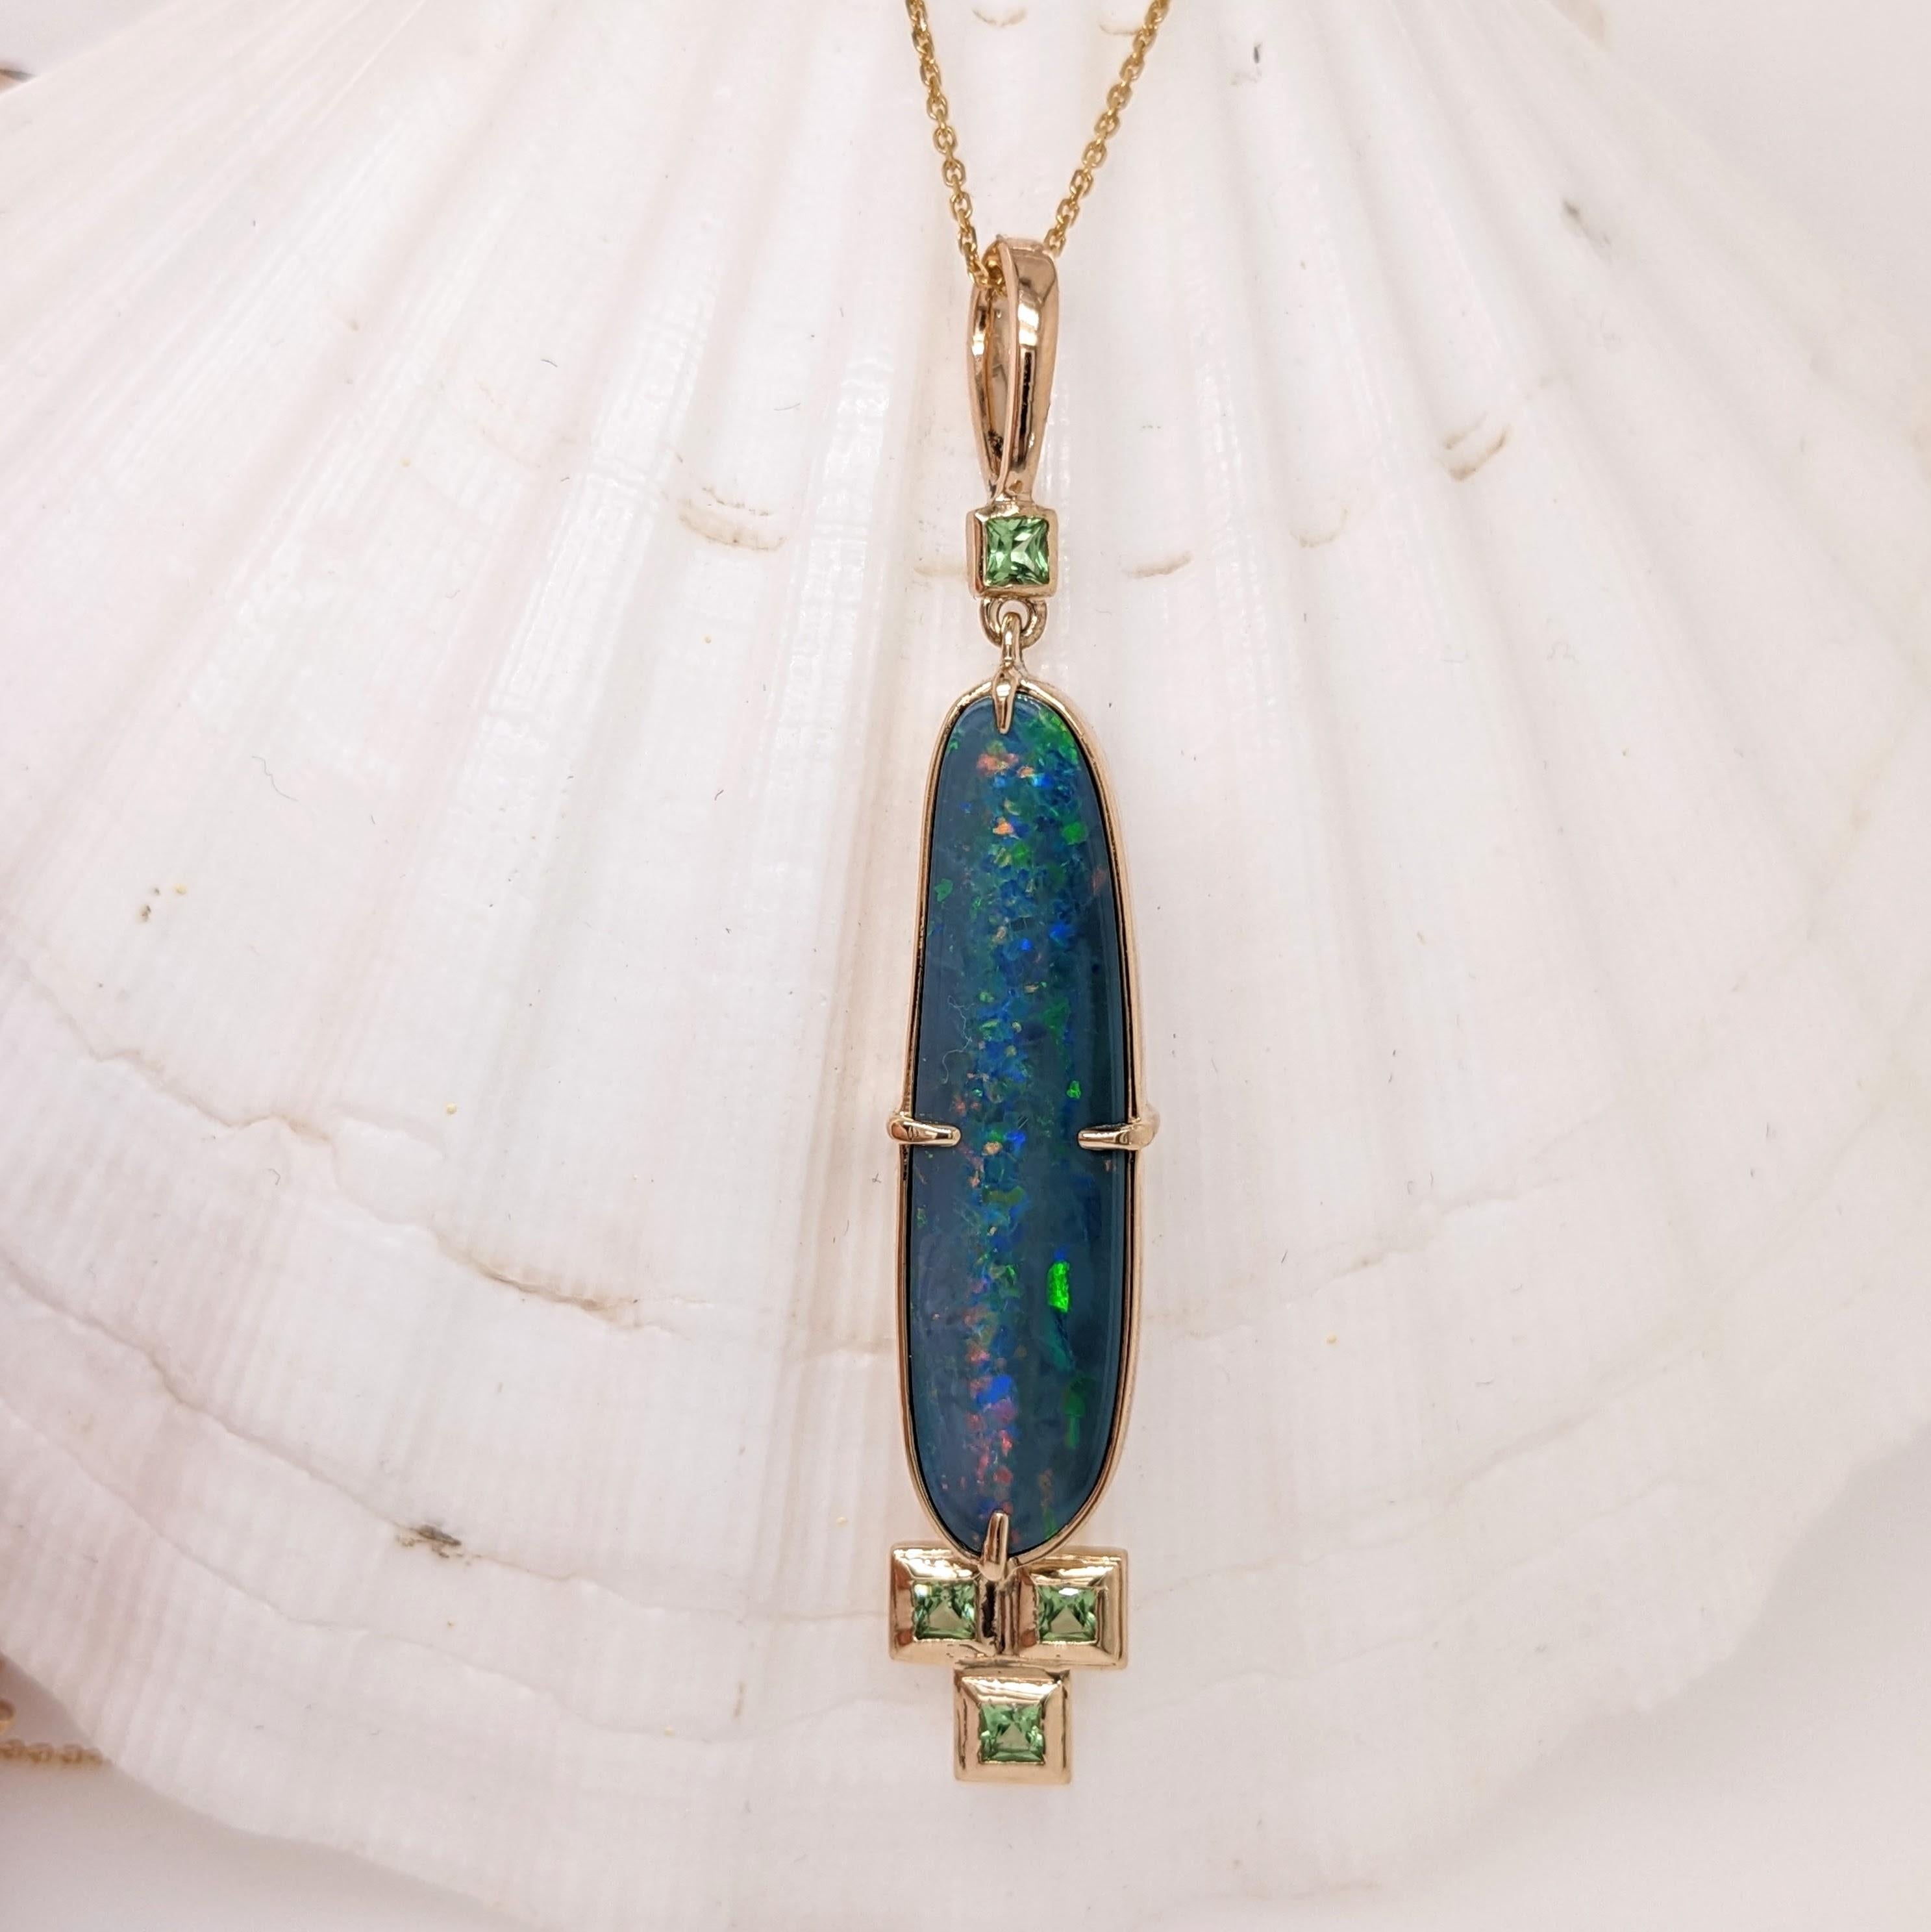 Ce magnifique pendentif présente une opale boulder ovale de 5,55 carats avec 4 tsavorites, une en haut et 3 en bas de l'opale, le tout serti dans de l'or massif 14K. Ce pendentif est une pièce d'apparat qui met en valeur la beauté de l'opale.